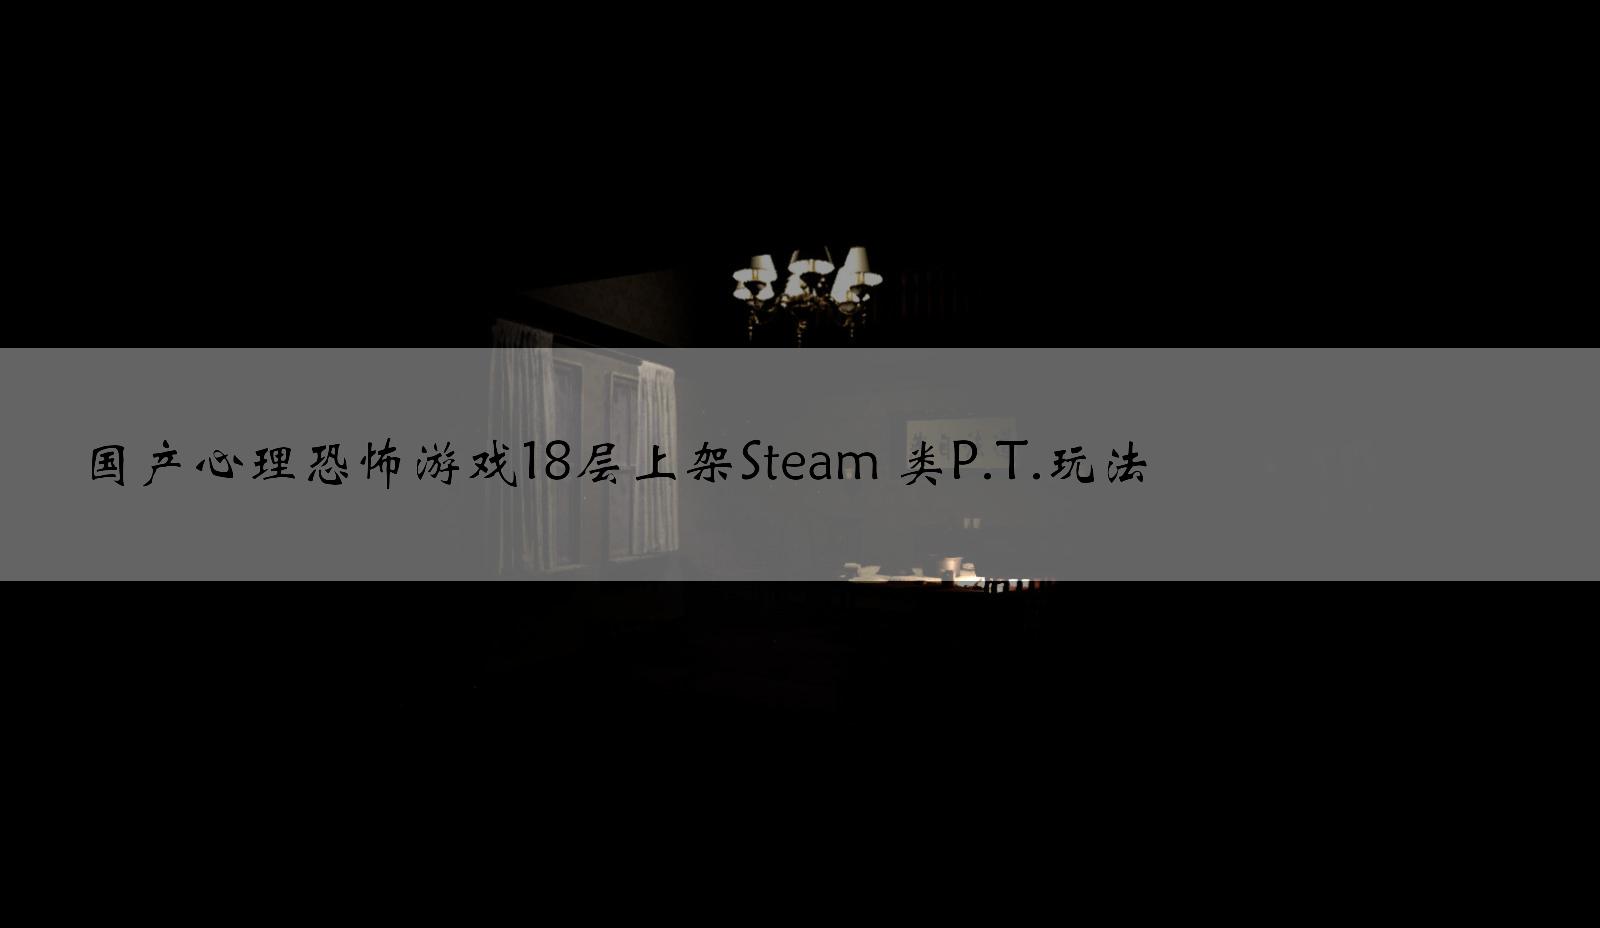 国产心理恐怖游戏18层上架Steam 类P.T.玩法